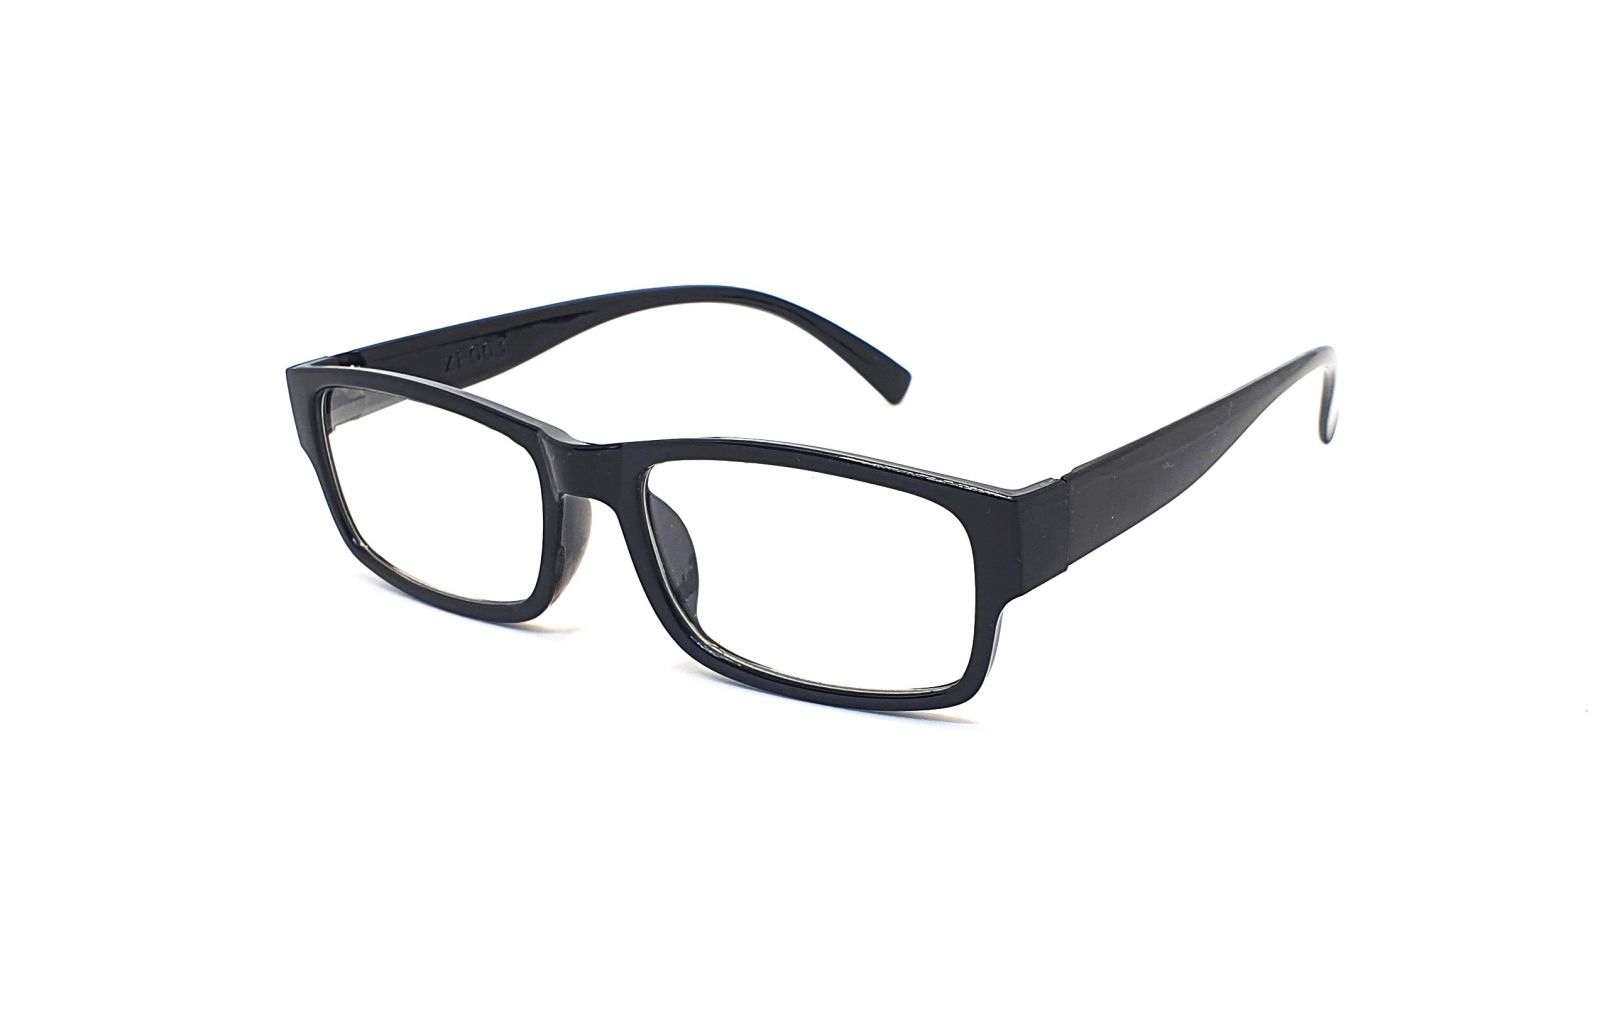 Dioptrické brýle ZP003 +1,50